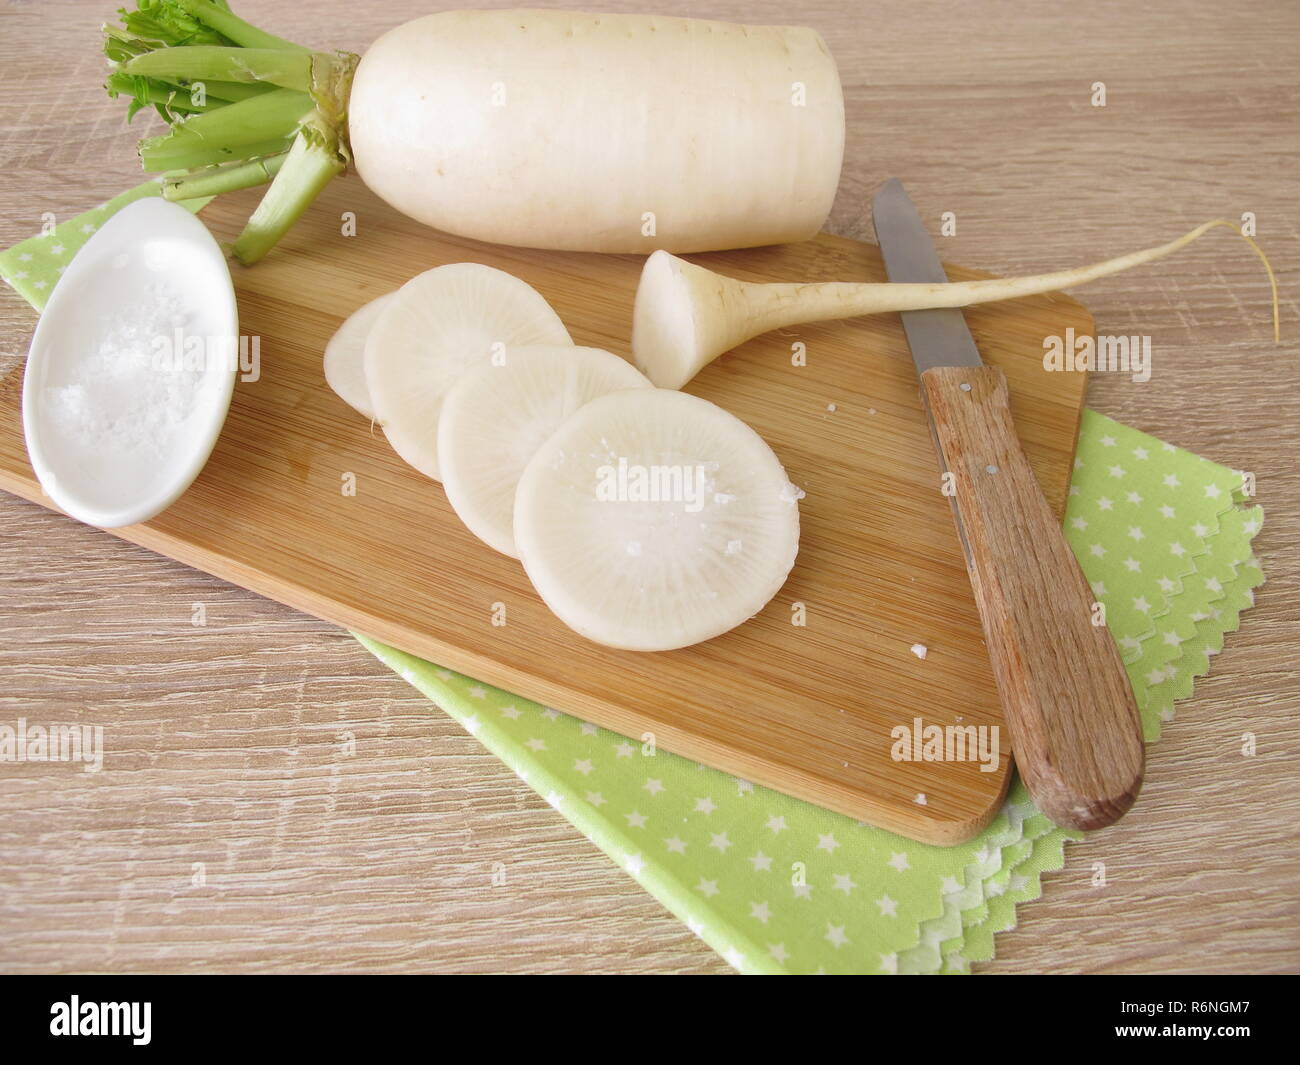 white daikon radish with salt Stock Photo